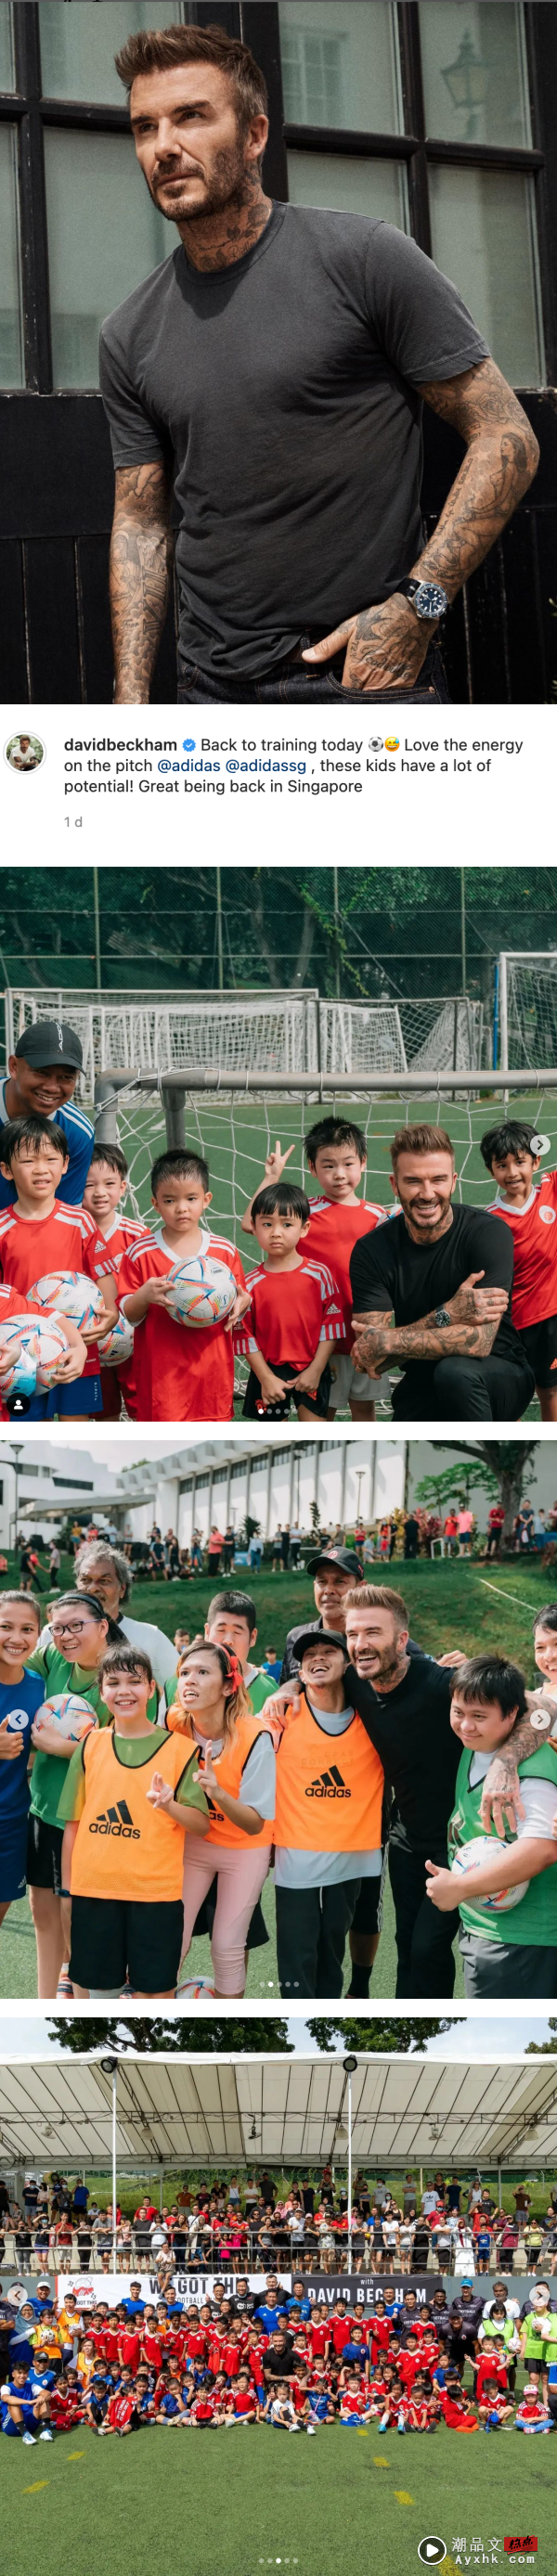 David Beckham 惊喜现身新加坡！训练班遭小孩吐槽“欸”…直接认怂道歉！ 娱乐资讯 图1张